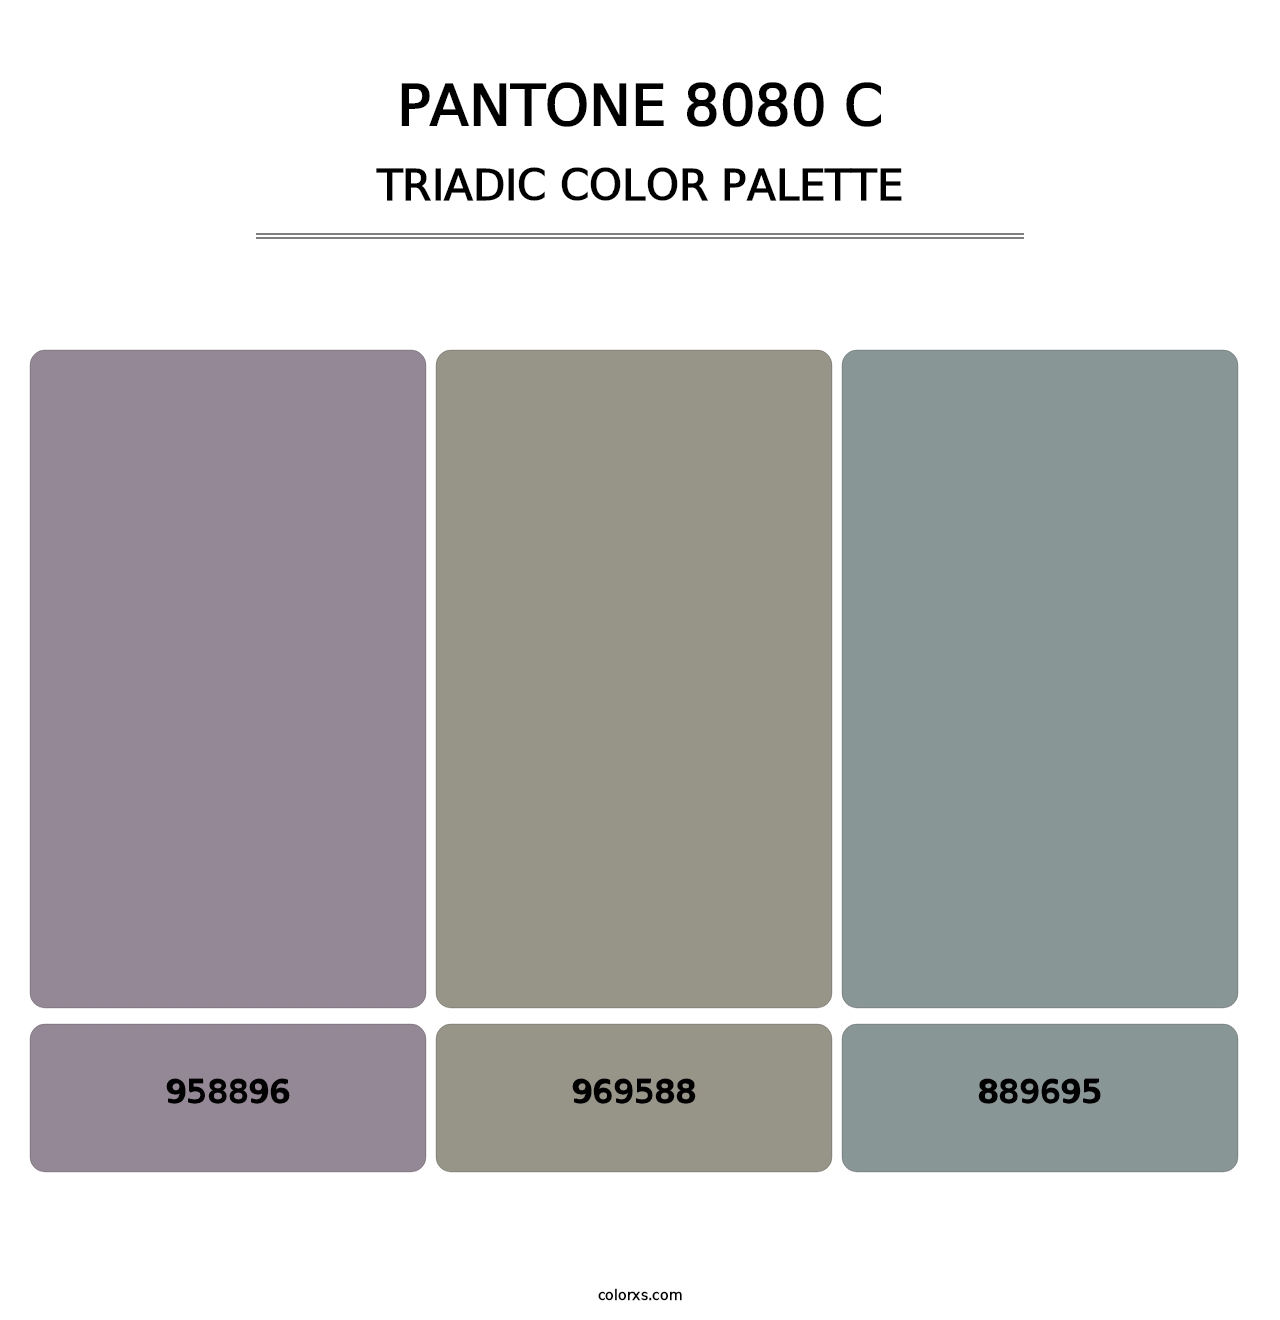 PANTONE 8080 C - Triadic Color Palette